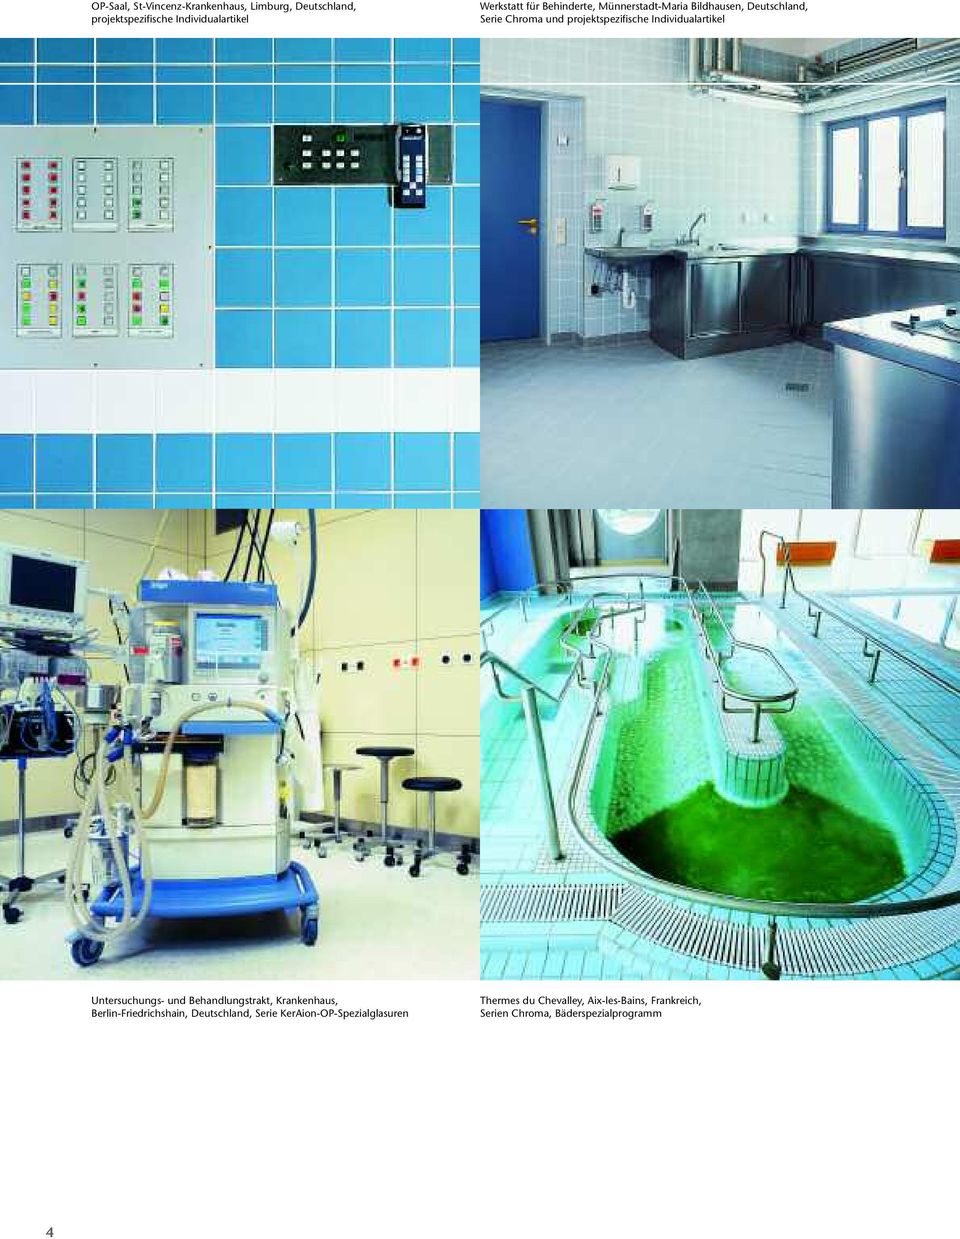 Individualartikel Untersuchungs- und Behandlungstrakt, Krankenhaus, Berlin-Friedrichshain, Deutschland,